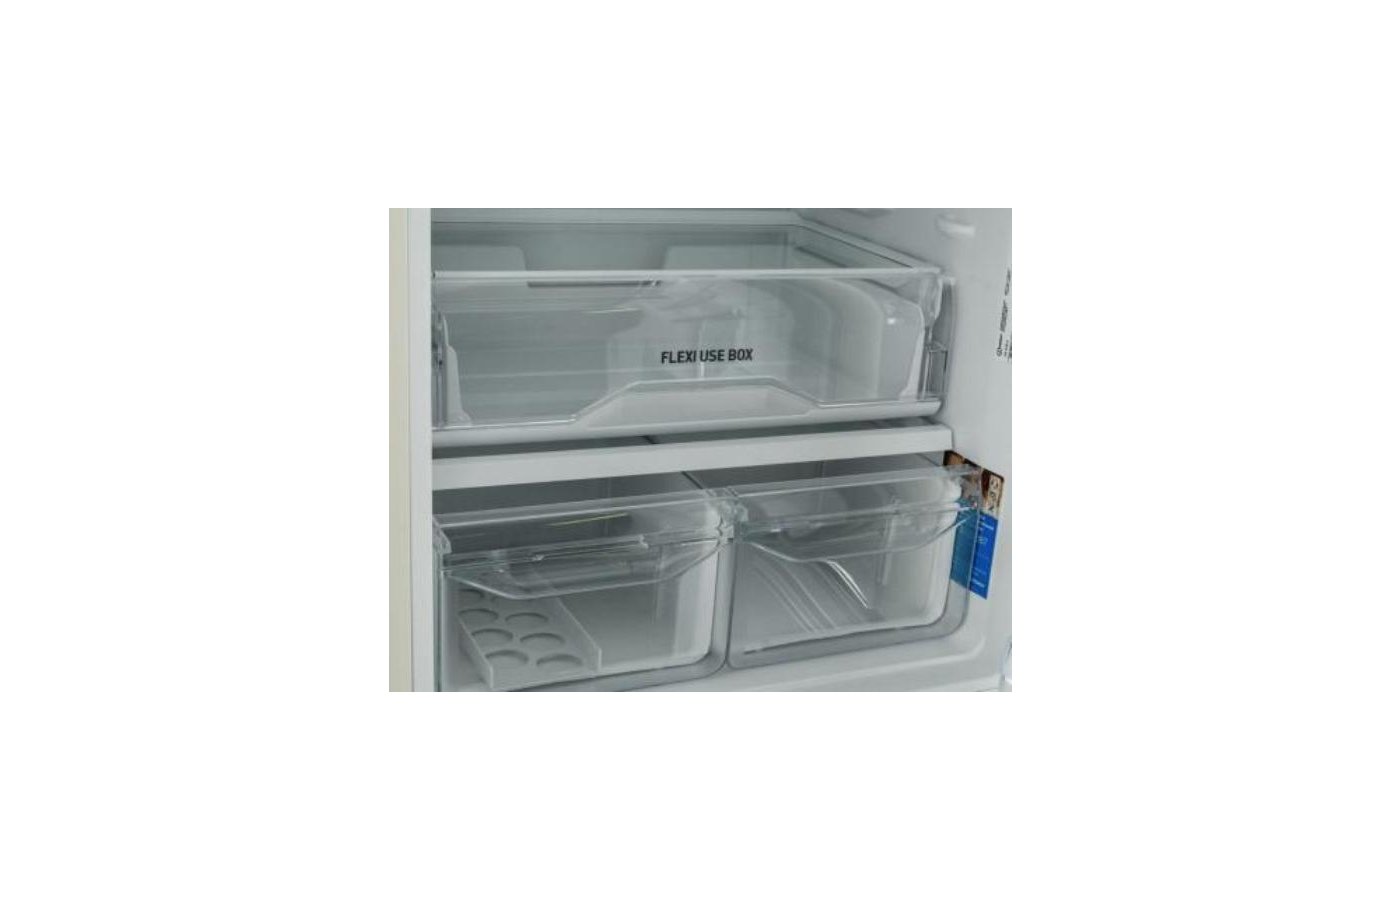 Днс холодильник индезит. Индезит itr4180 e. Холодильник Индезит Flexi use Box.